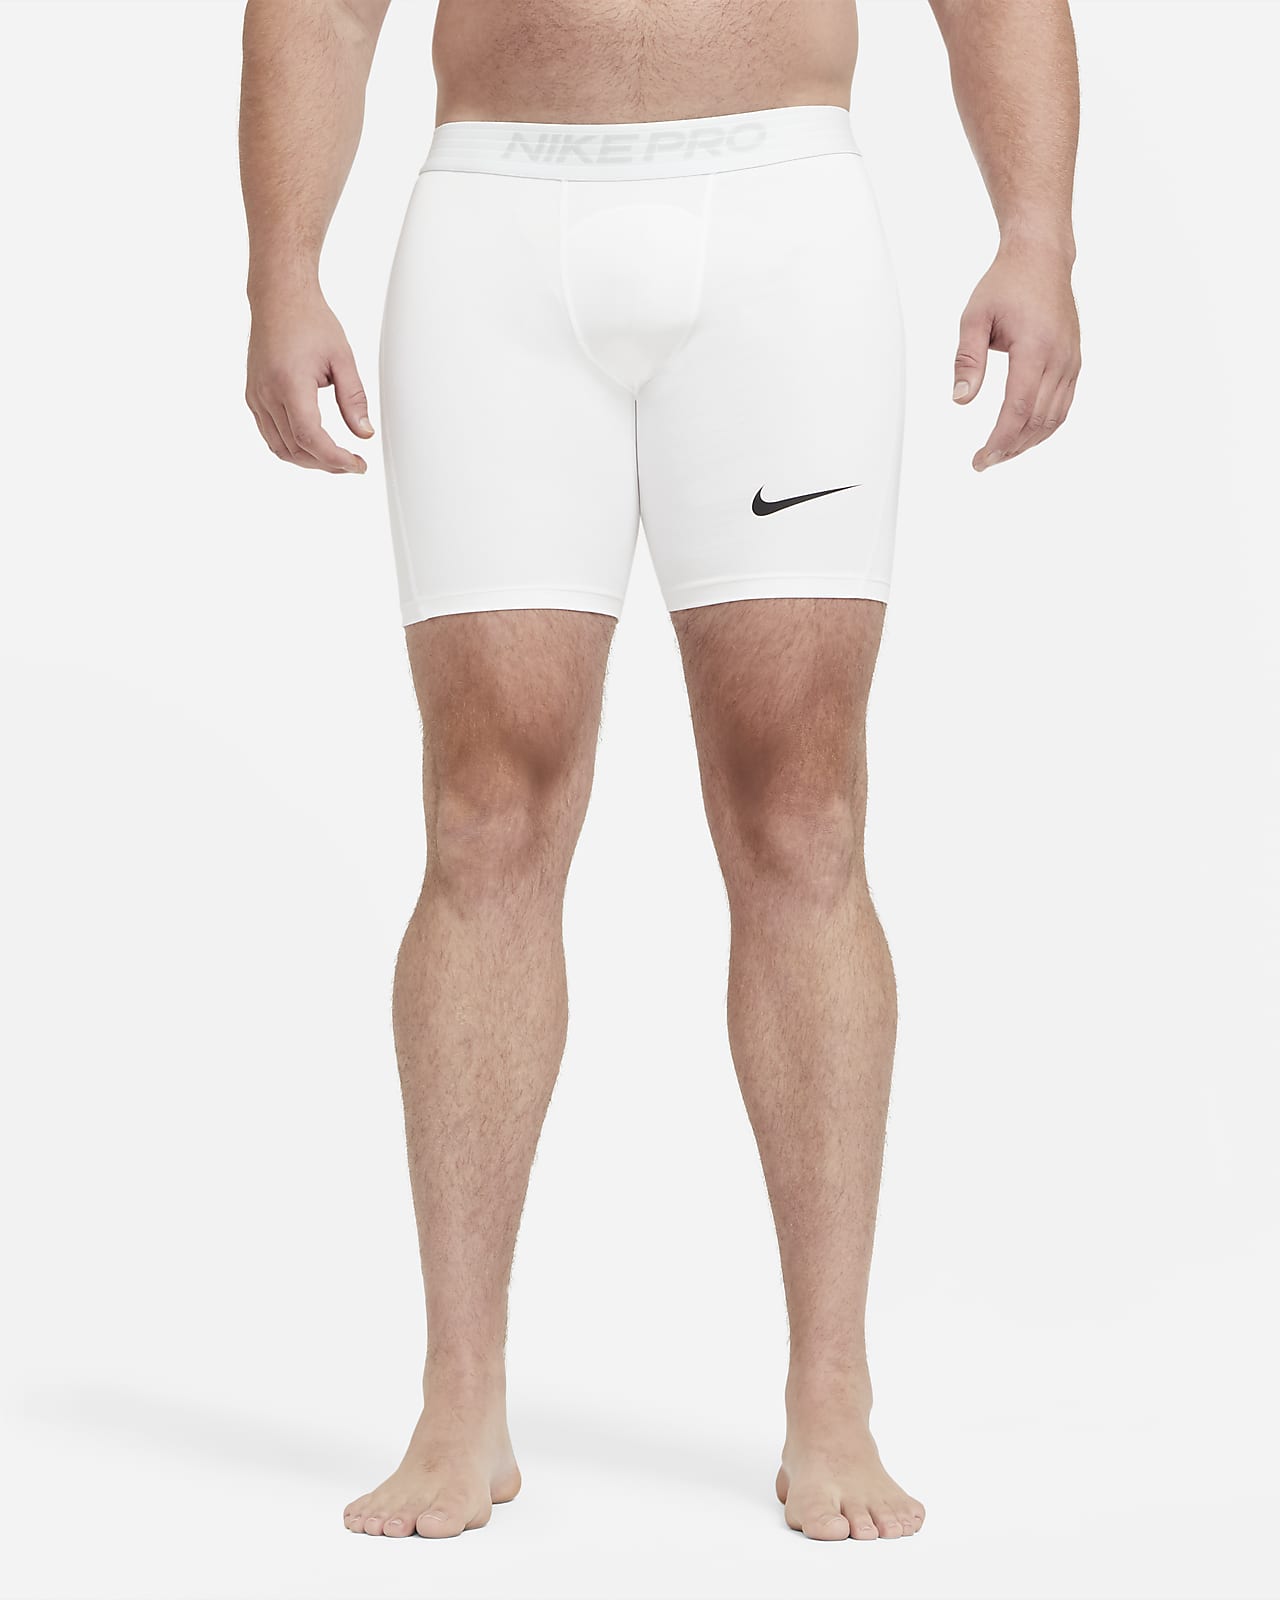 men's long shorts nike pro